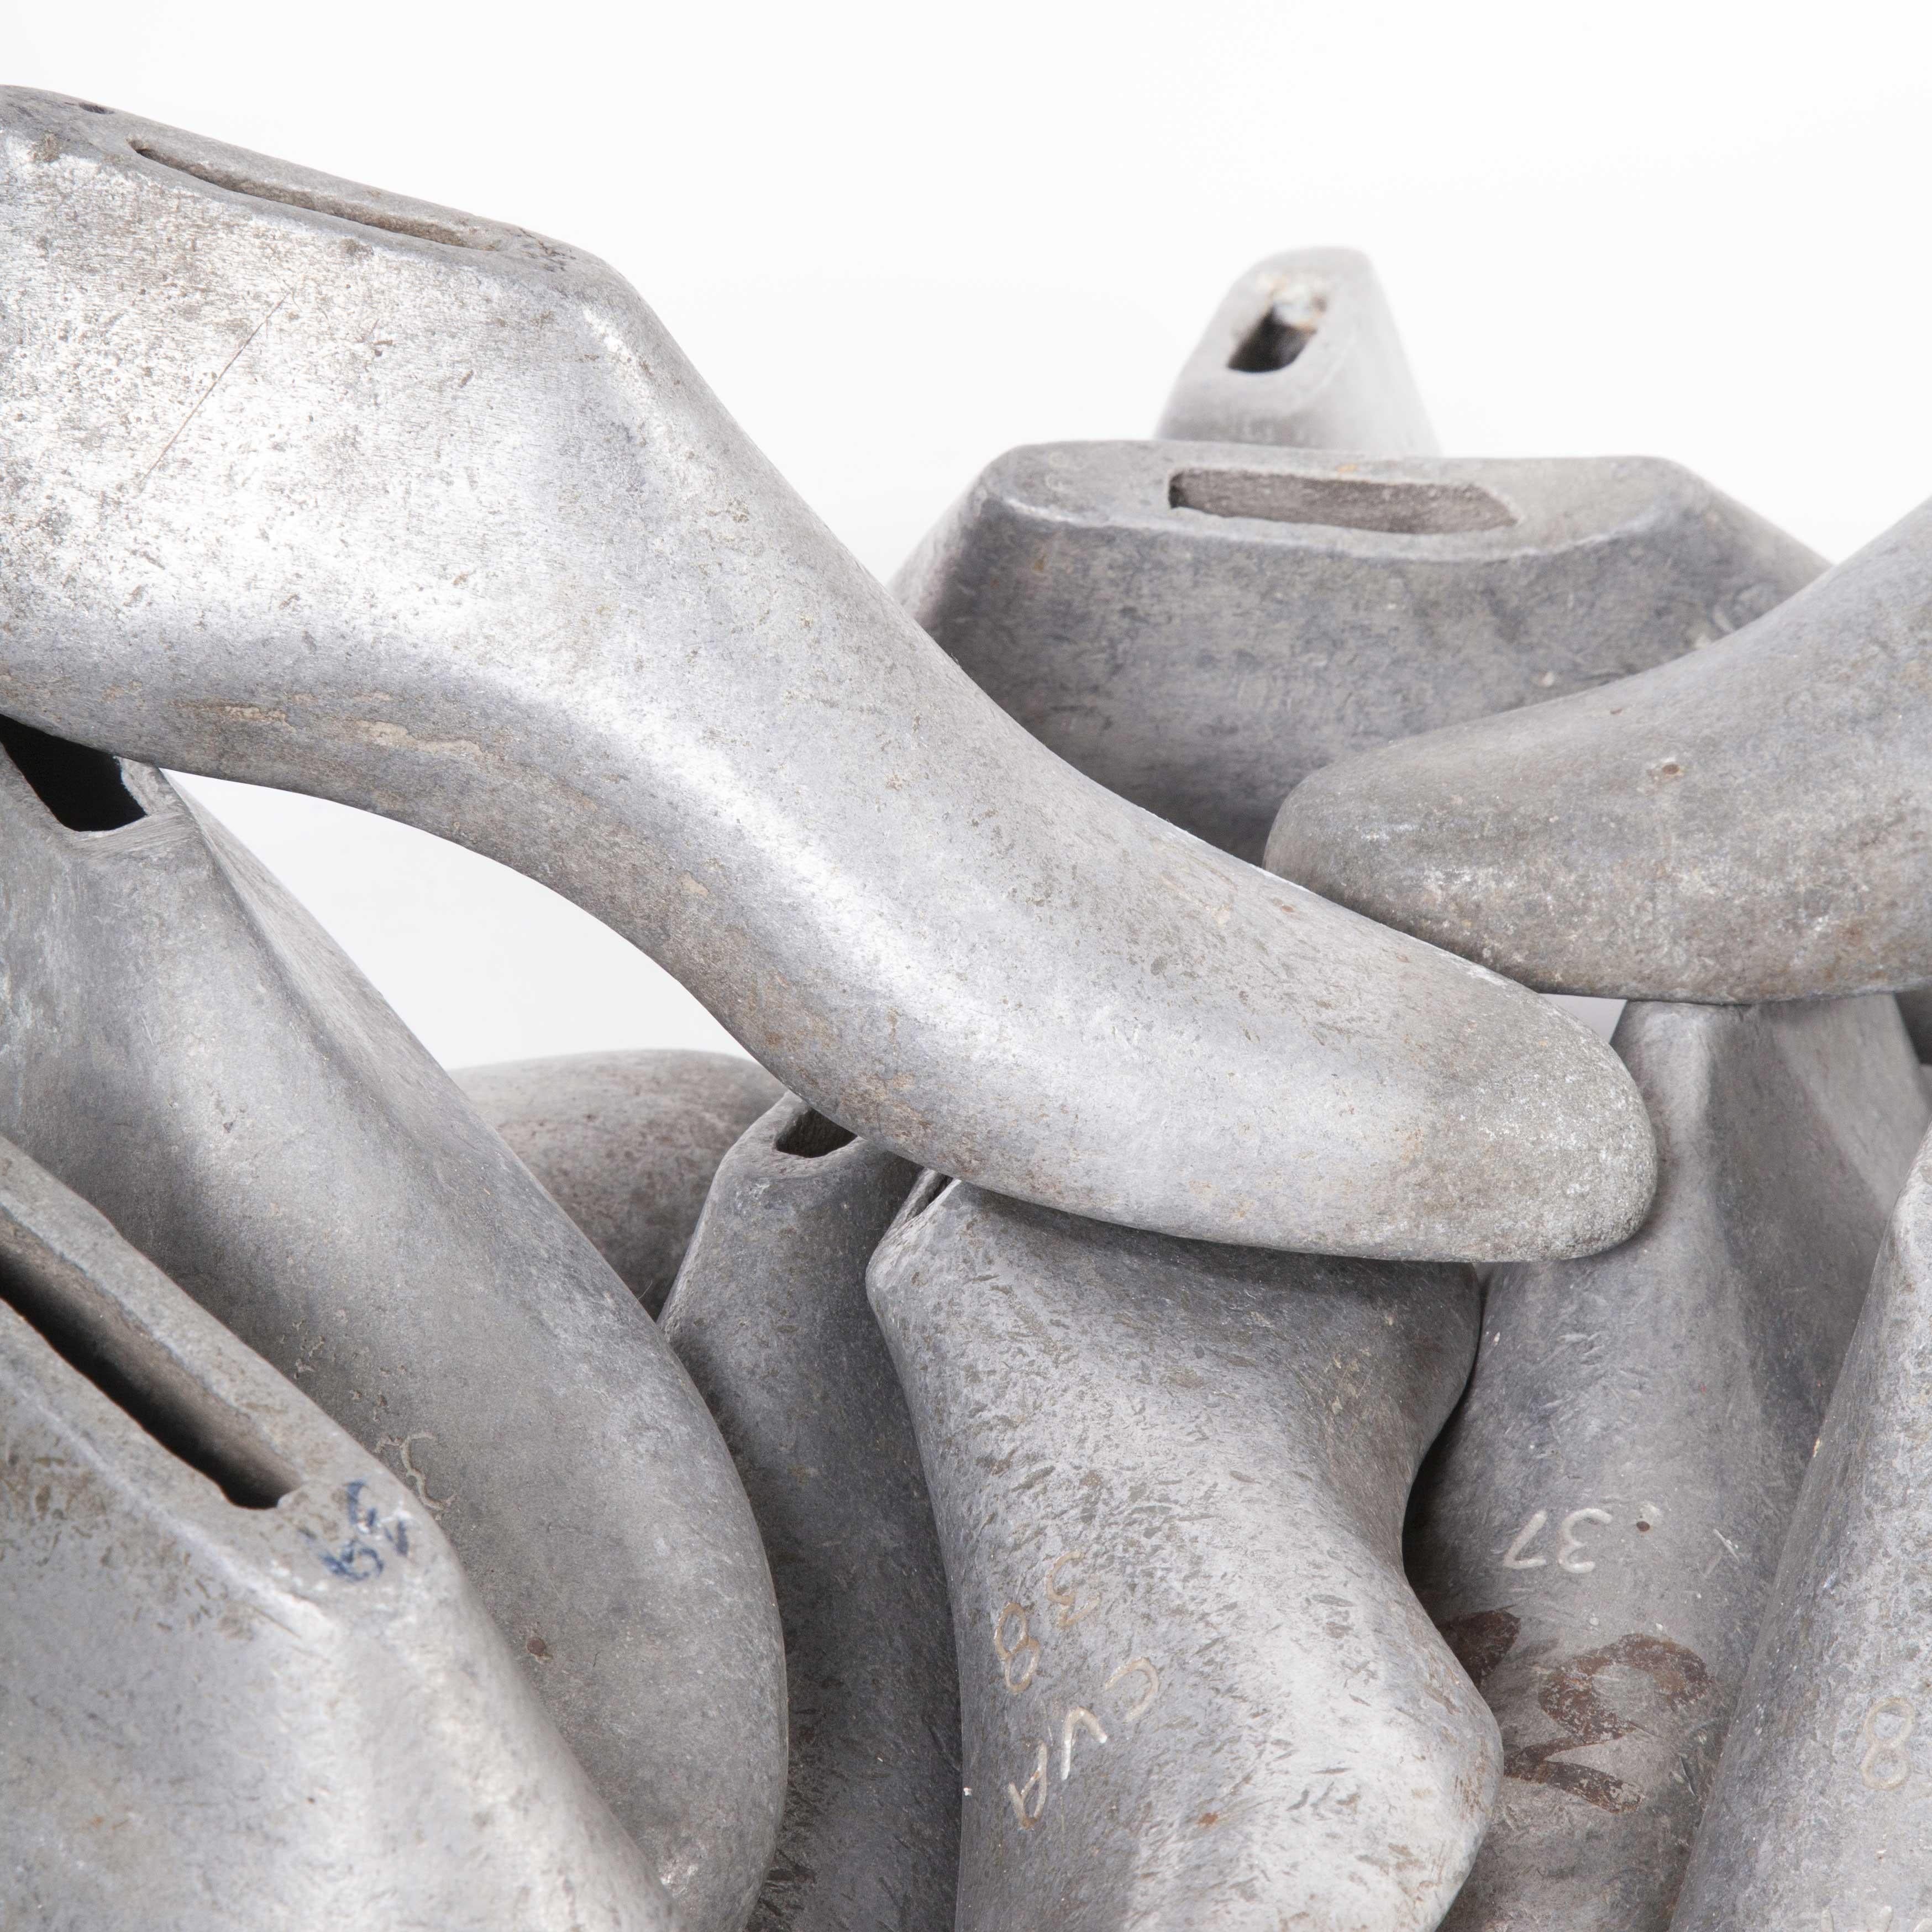 aluminium-Schuhleisten der 1950er Jahre - Formen

aluminium-Schuhleisten aus den 1950er Jahren - Gussformen. Ungewöhnliche Schuhleisten aus Aluminiumguss. Verkauft als Einzelstücke, die nicht nach Größe oder links/rechts gepaart werden können.